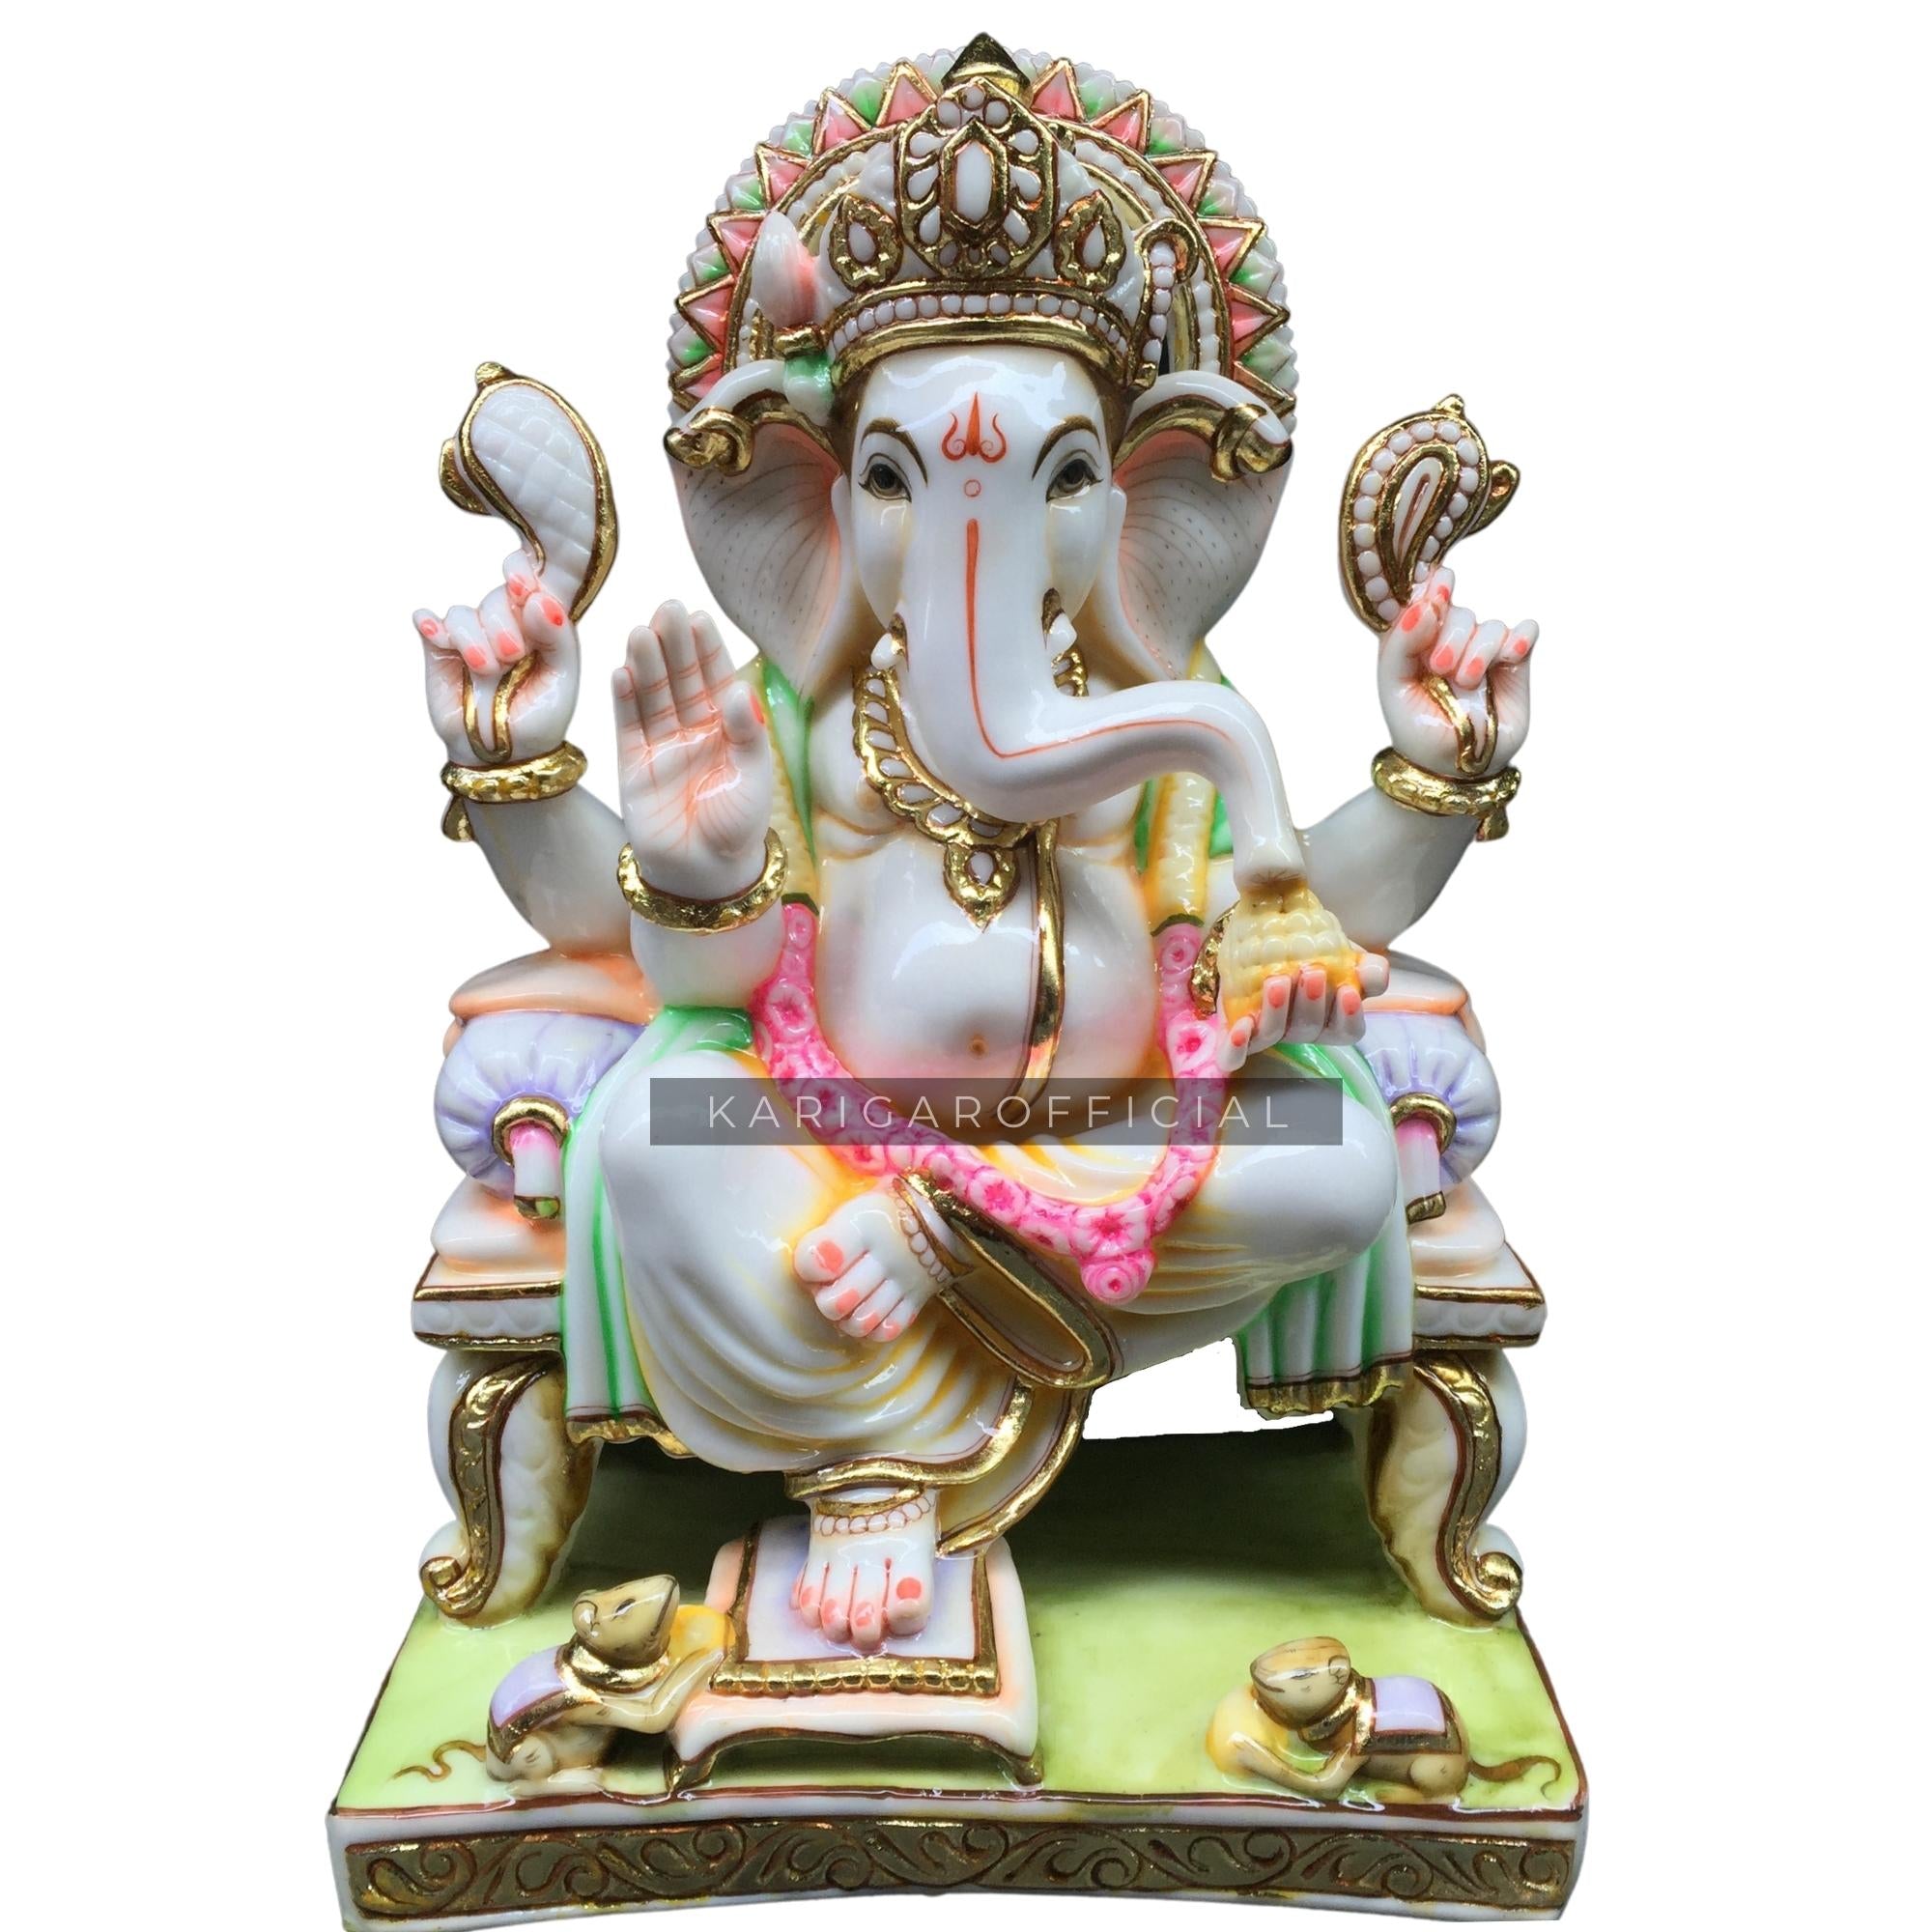 YUVIKA CRAFTS Handcrafted Lord Glass Ganesha Idols for home decor|God idols  for car dashboard|Ganesha Idol for car dashboard, gifts And home|Ganesha  statue in Religious Idols|ganesh idol in Spiritual & Festive  Décor|decoration items